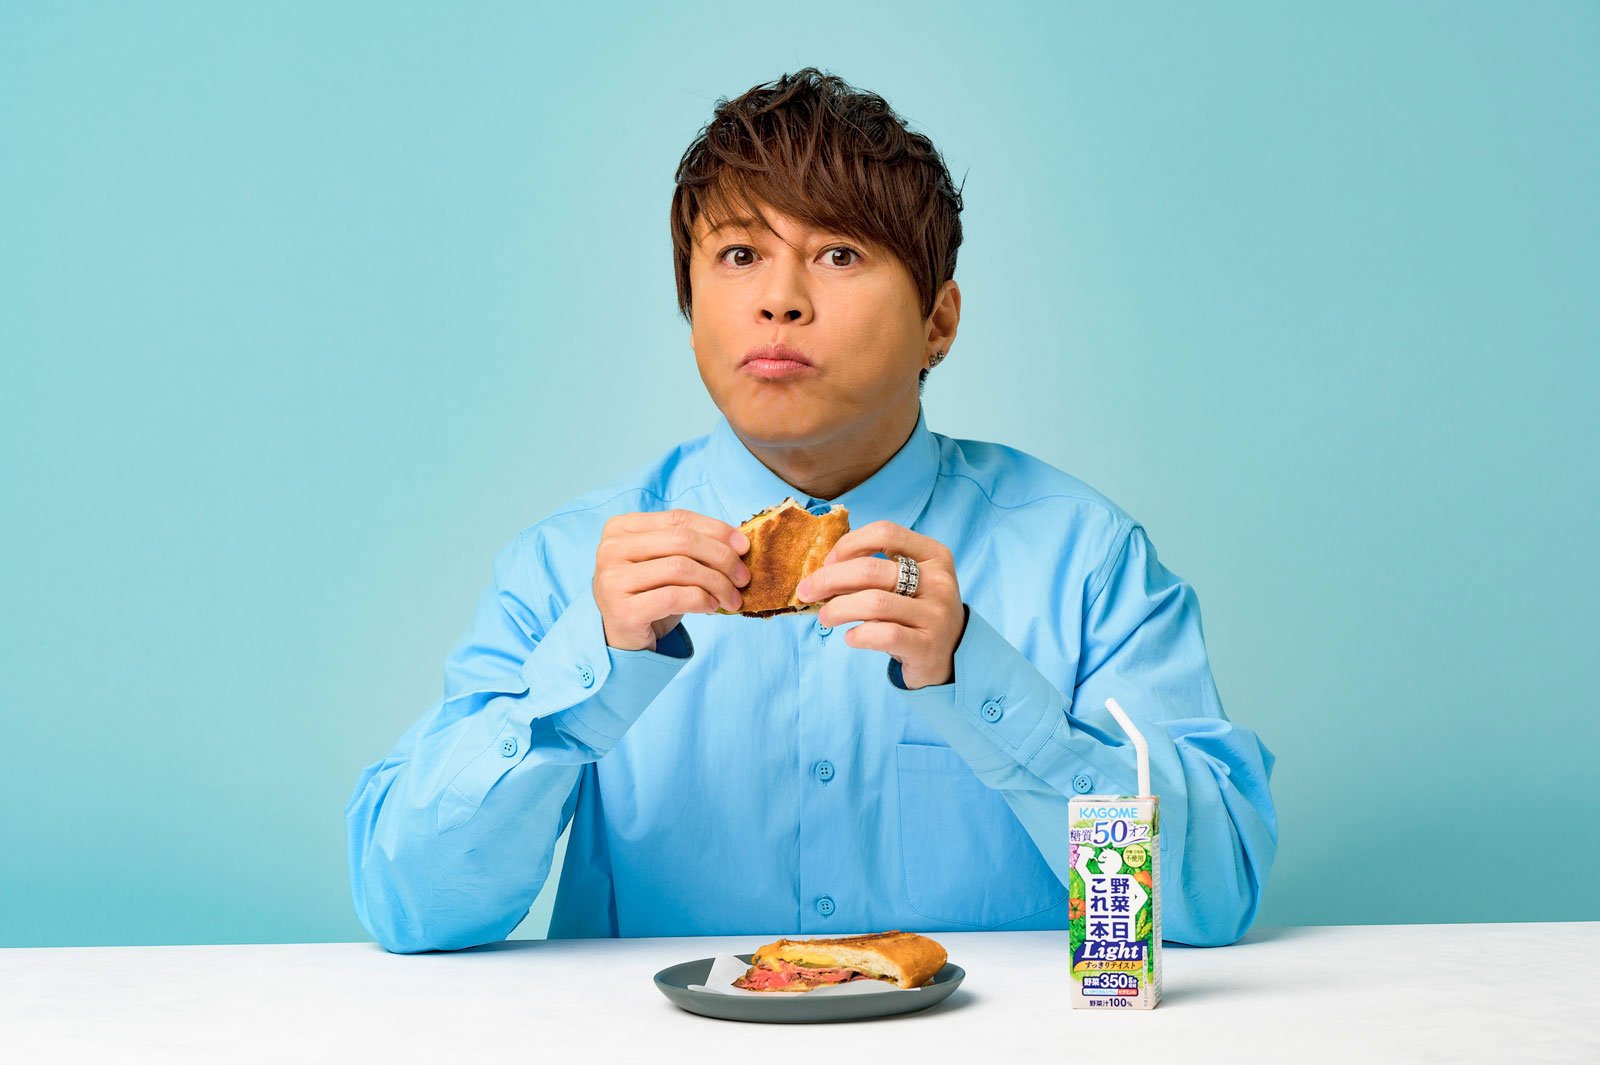 キューバサンドイッチを食べる西川貴教さん